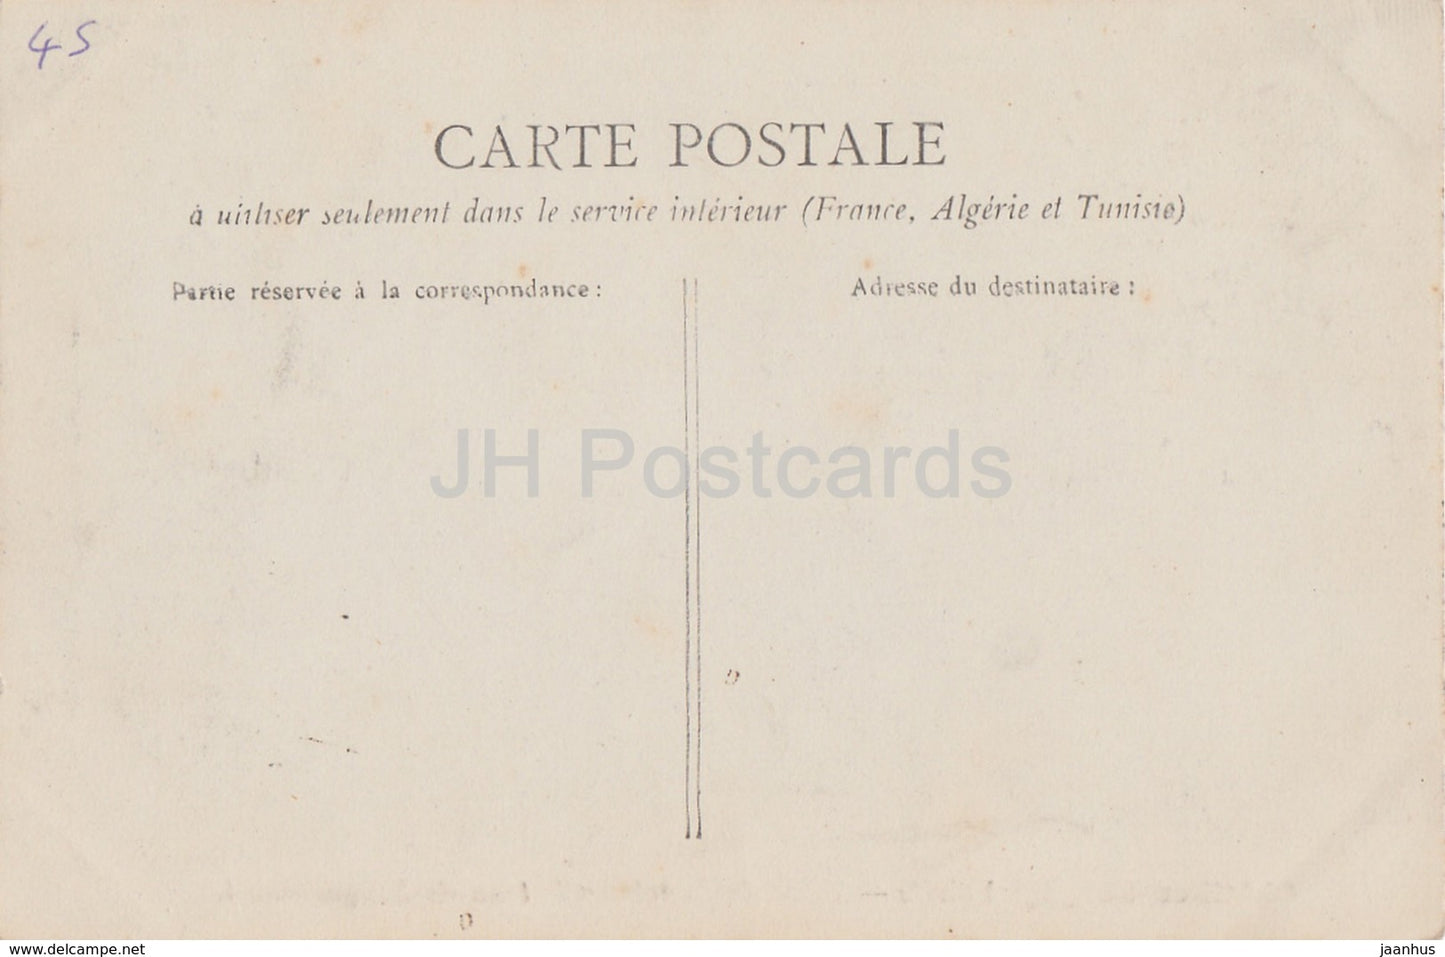 Chatillon Coligny - Tour de l'ancien Château de Briquemault - château - carte postale ancienne - France - inutilisé